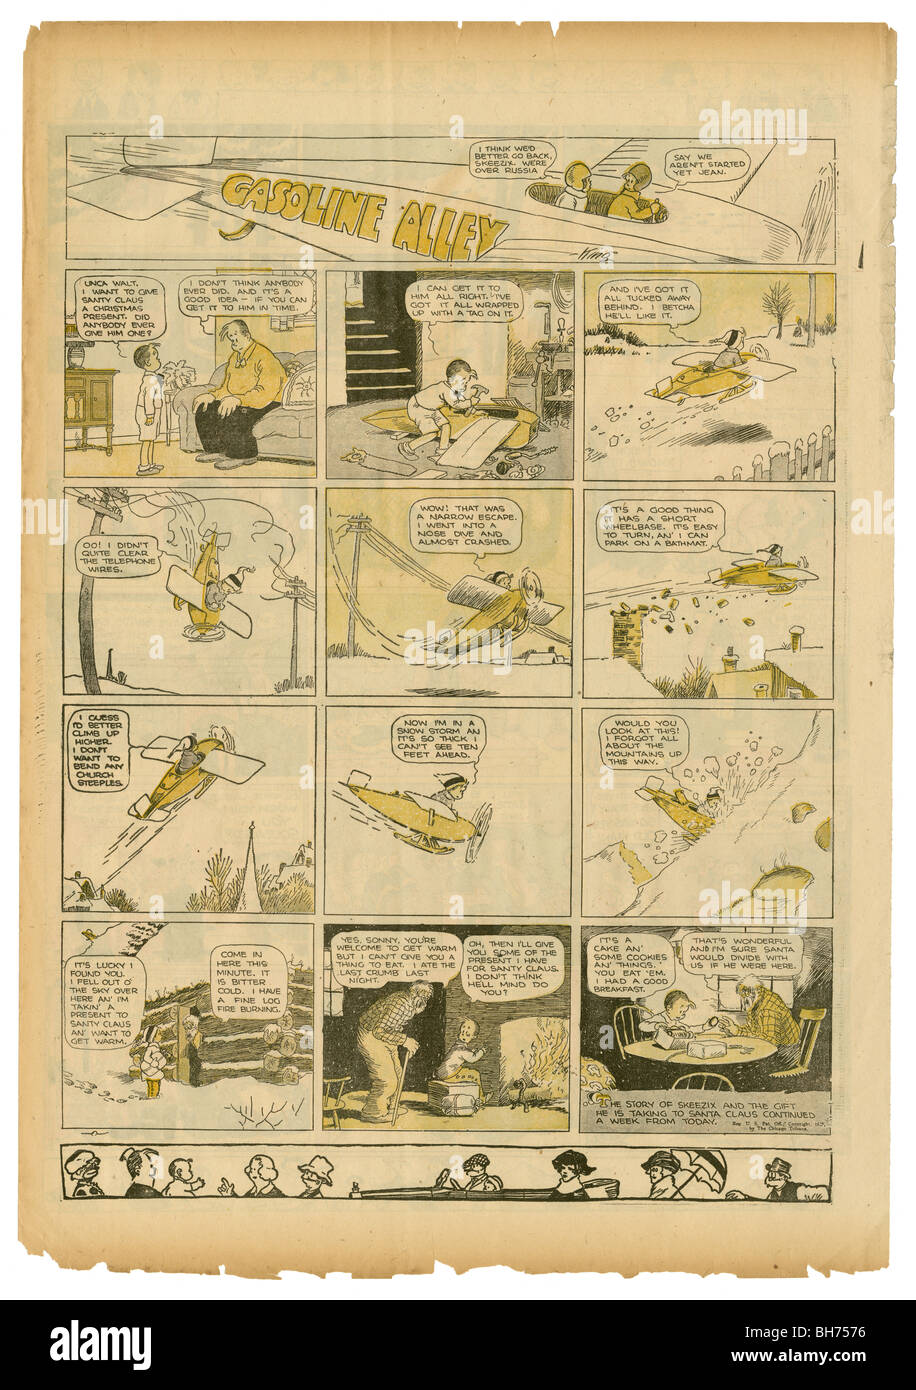 1927 domingo tira cómica, Gasolina Alley por el rey franco. Foto de stock